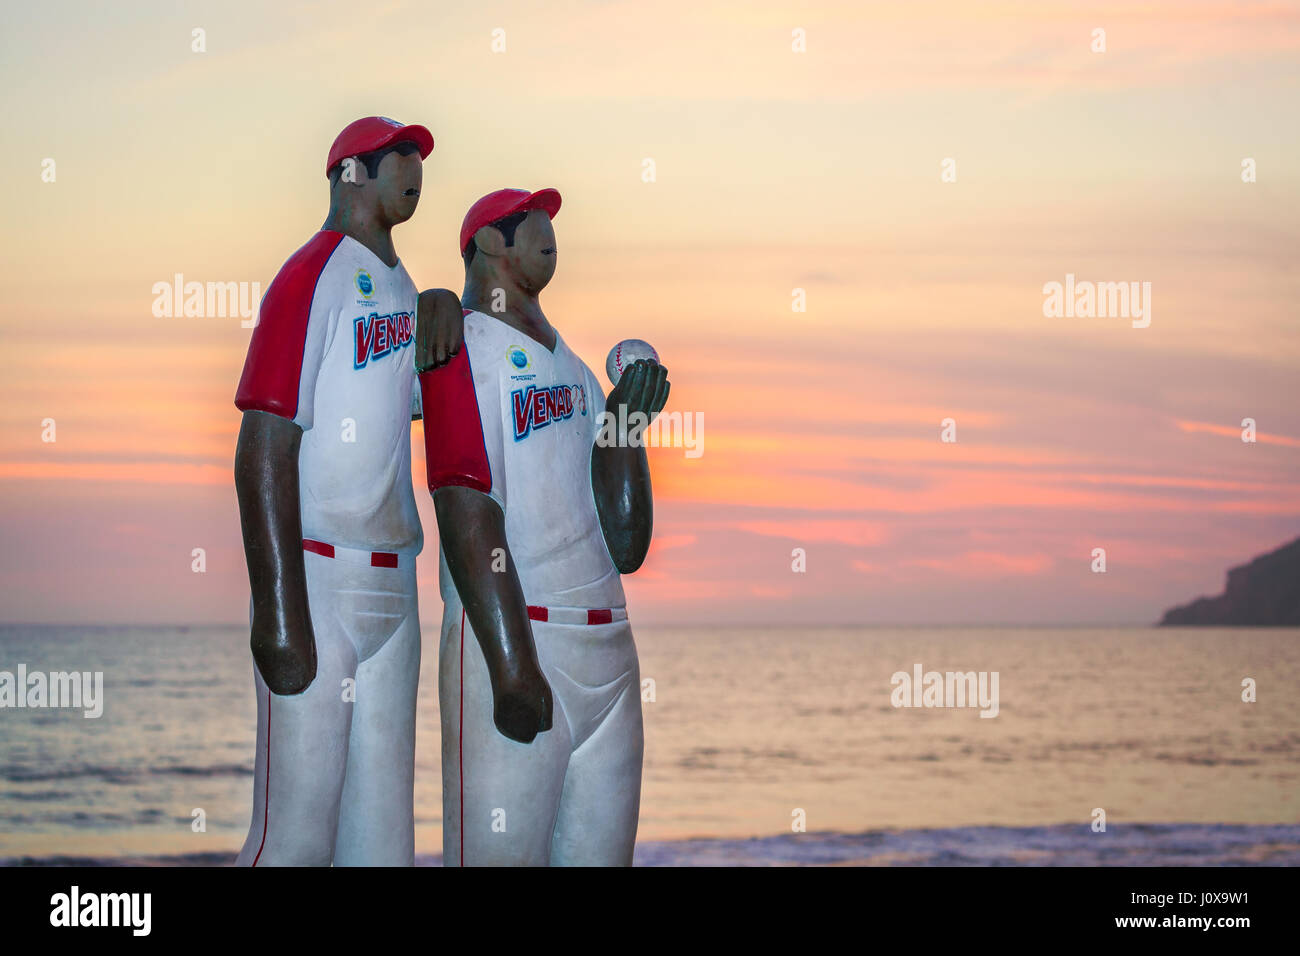 Skulptur namens "Los Peloteros" von zwei Baseball-Spieler aus dem lokalen Team in Mazatlan, Mexiko. Stockfoto